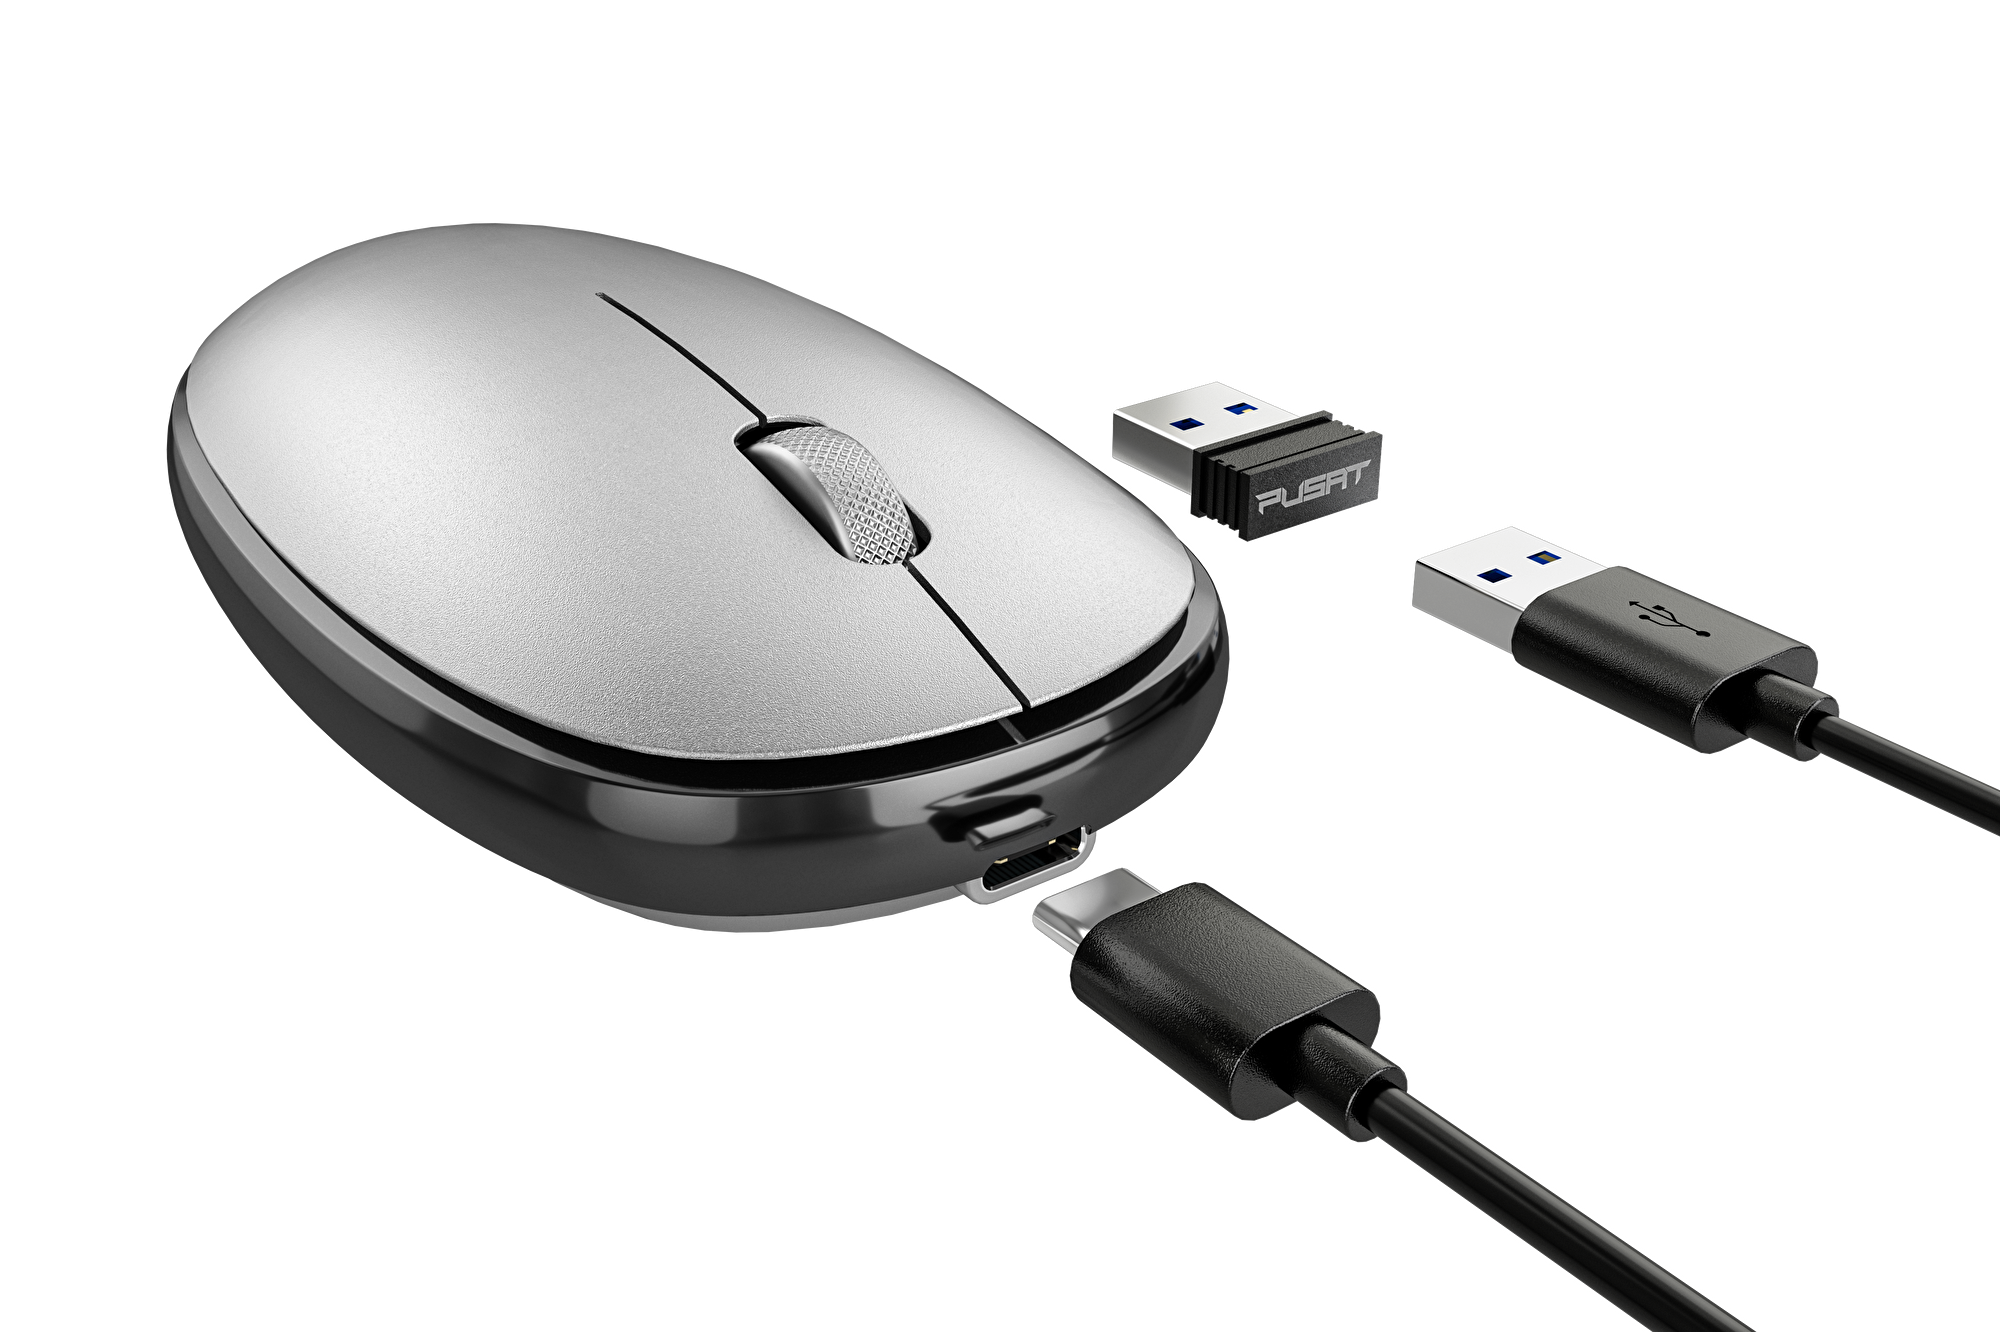 Pusat Business Pro Kablosuz Mouse - Gümüş 23031